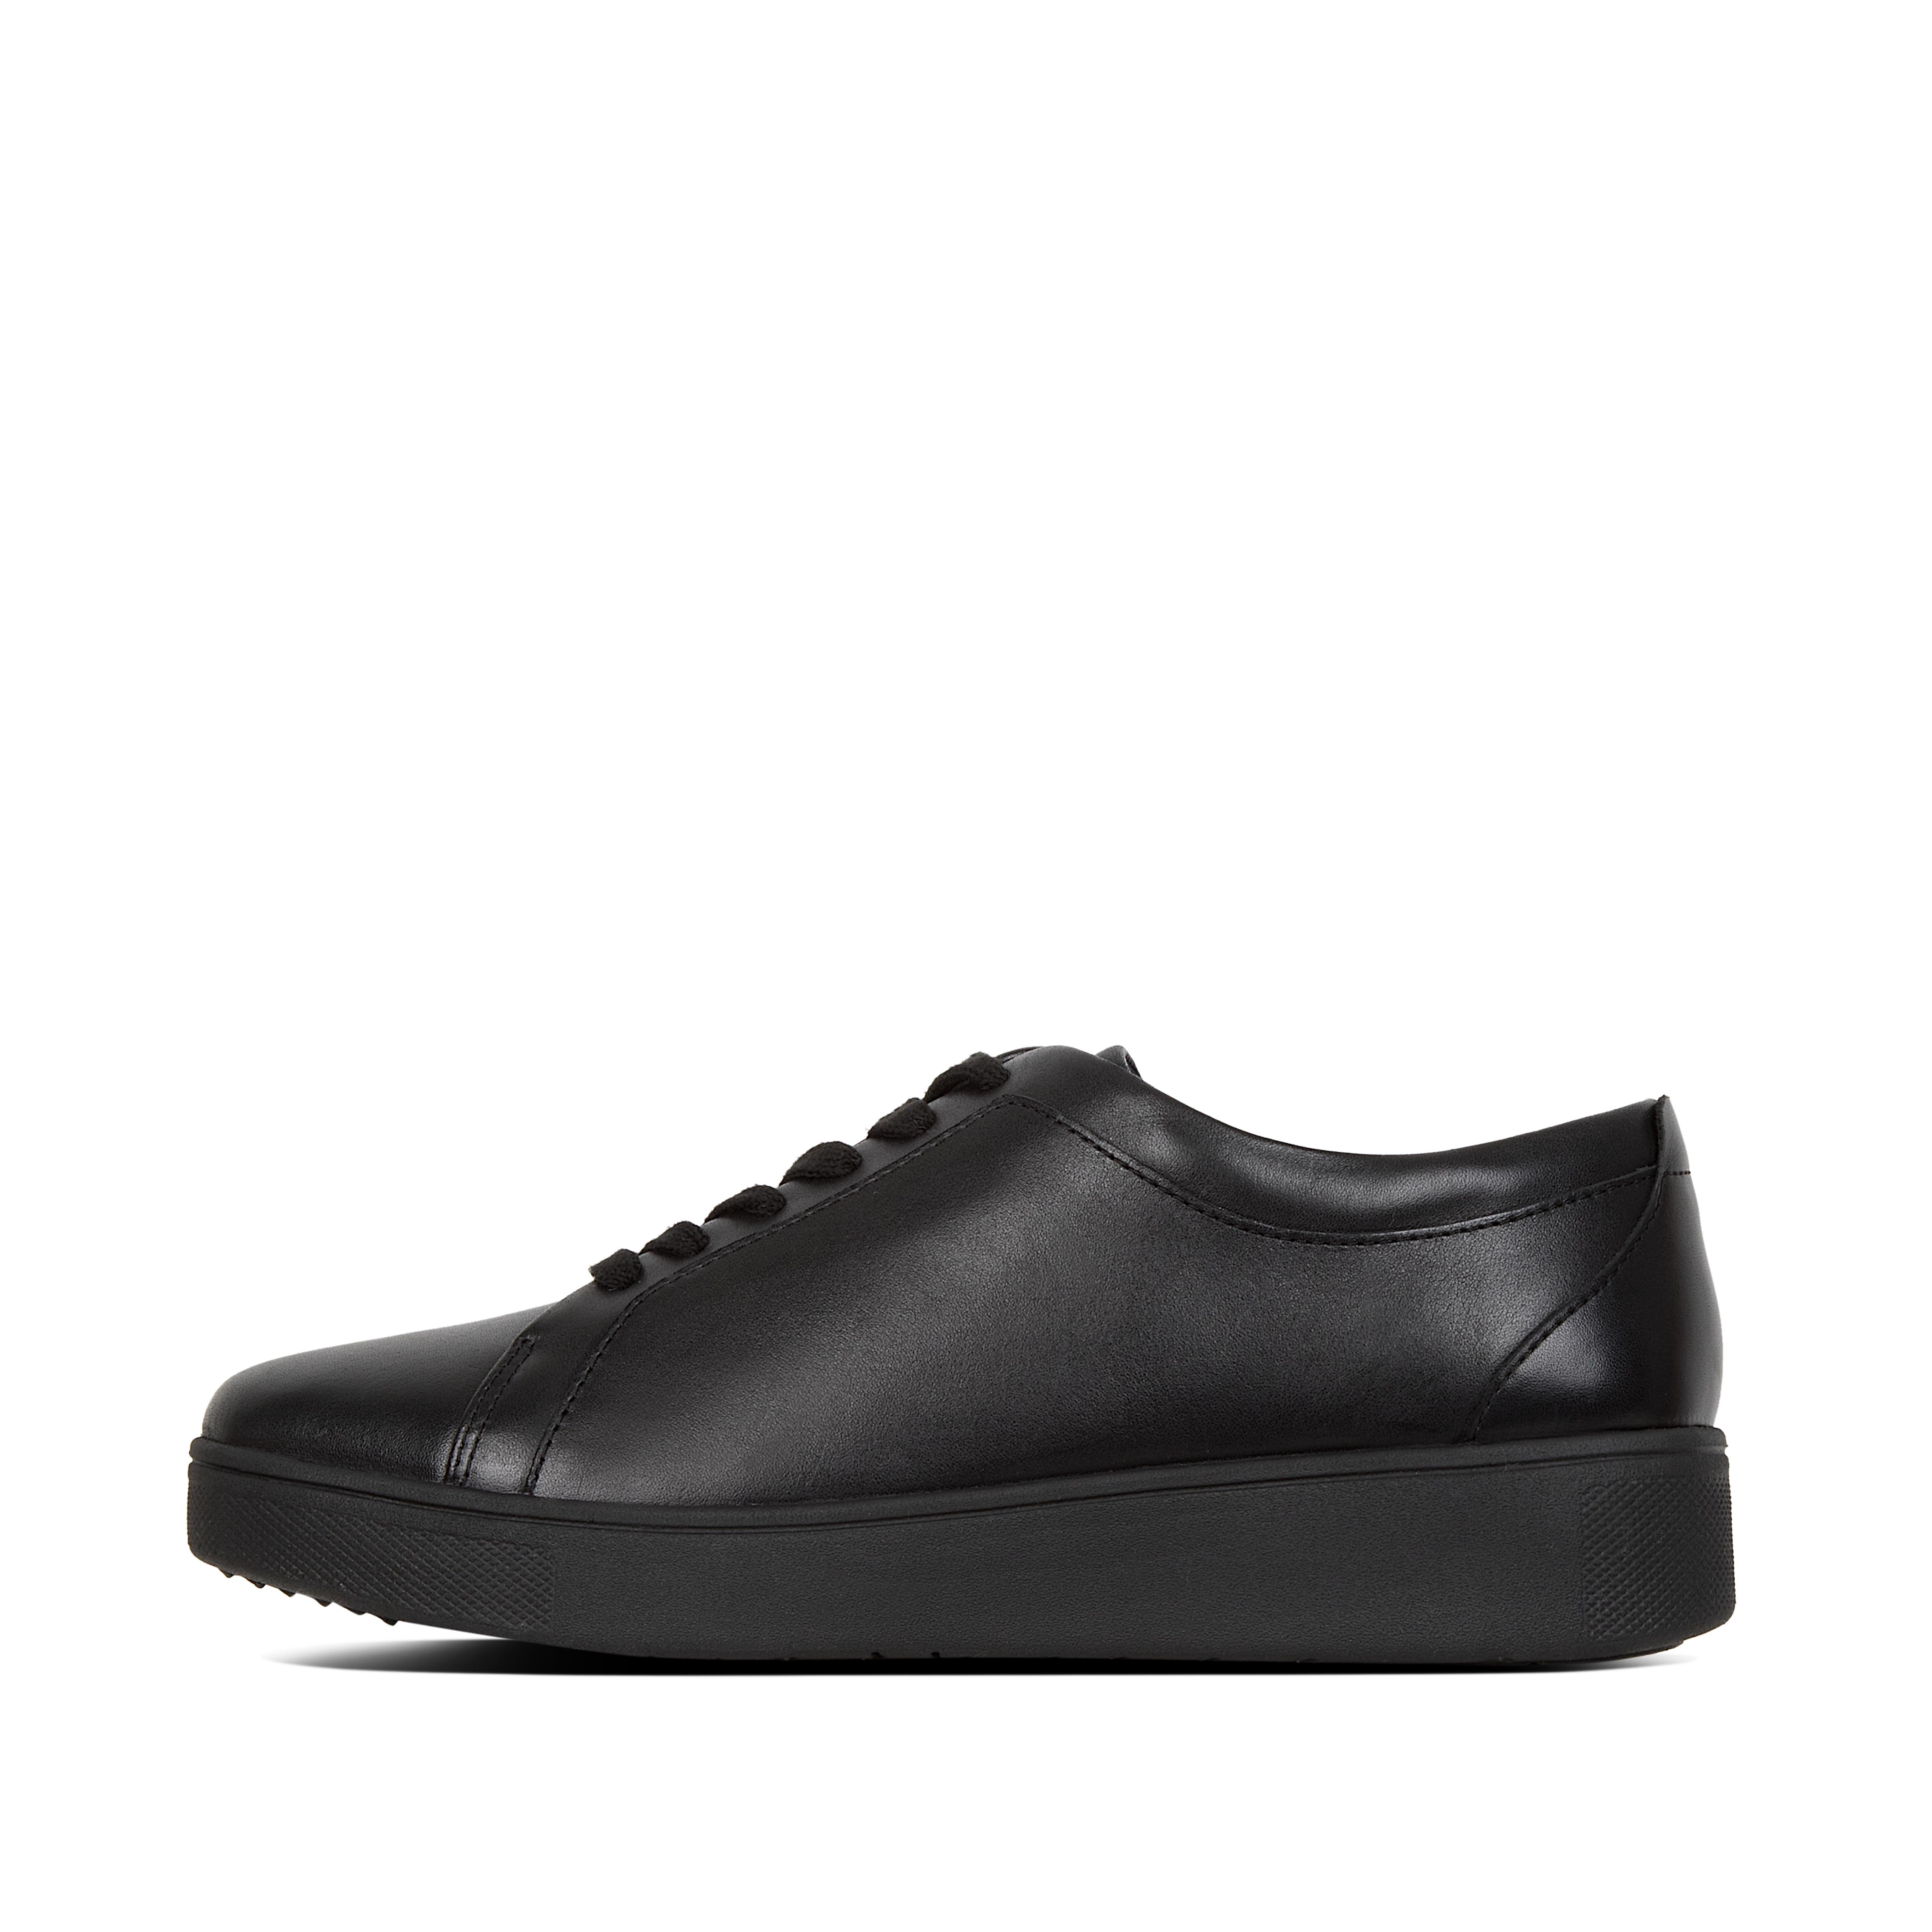 핏플랍 스니커즈 RALLY Leather Tennis Shoes , Leather Sneakers, All Black